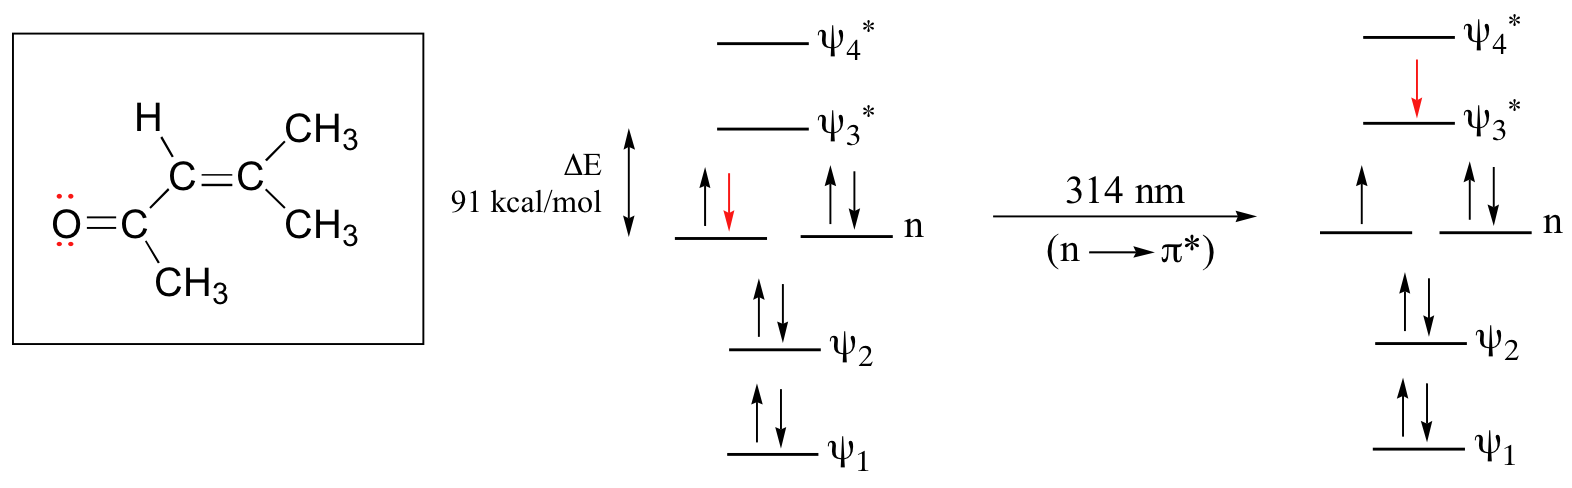 Diagrama orbital molecular para 4-metil-3-penten-2-ona. Dos orbitales de unión y dos orbitales antiligantes con un nivel n entre ellos. 4 electrones en el nivel de unión y 4 electrones en el nivel n. 91 k cal por mol entre los niveles n y antienlace. 314 nanómetros hacen que un electrón pase de n a orbital antienlace.